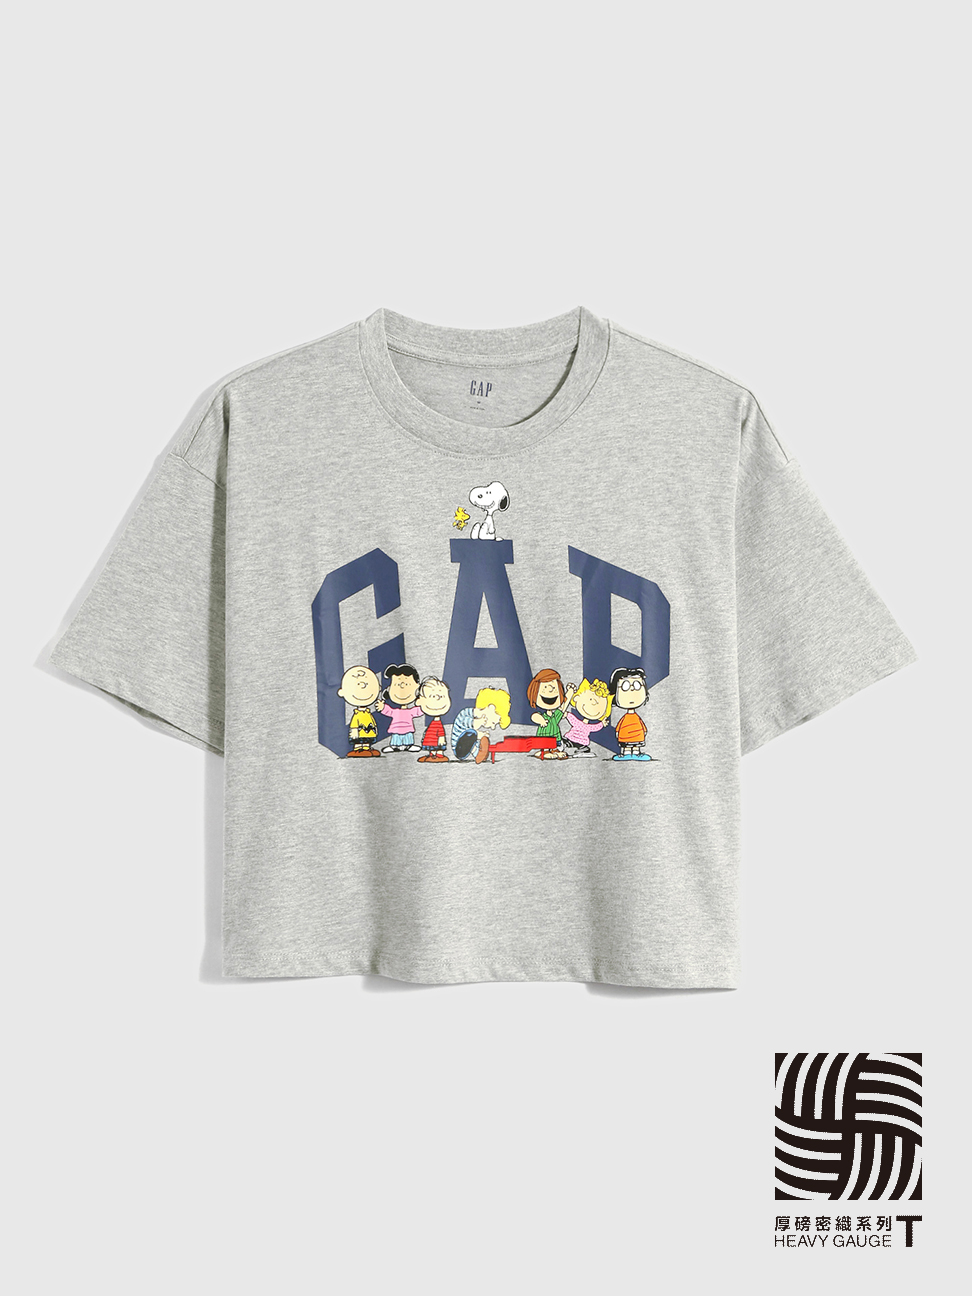 女裝|Gap x Snoopy史努比聯名 純棉落肩T恤-灰色